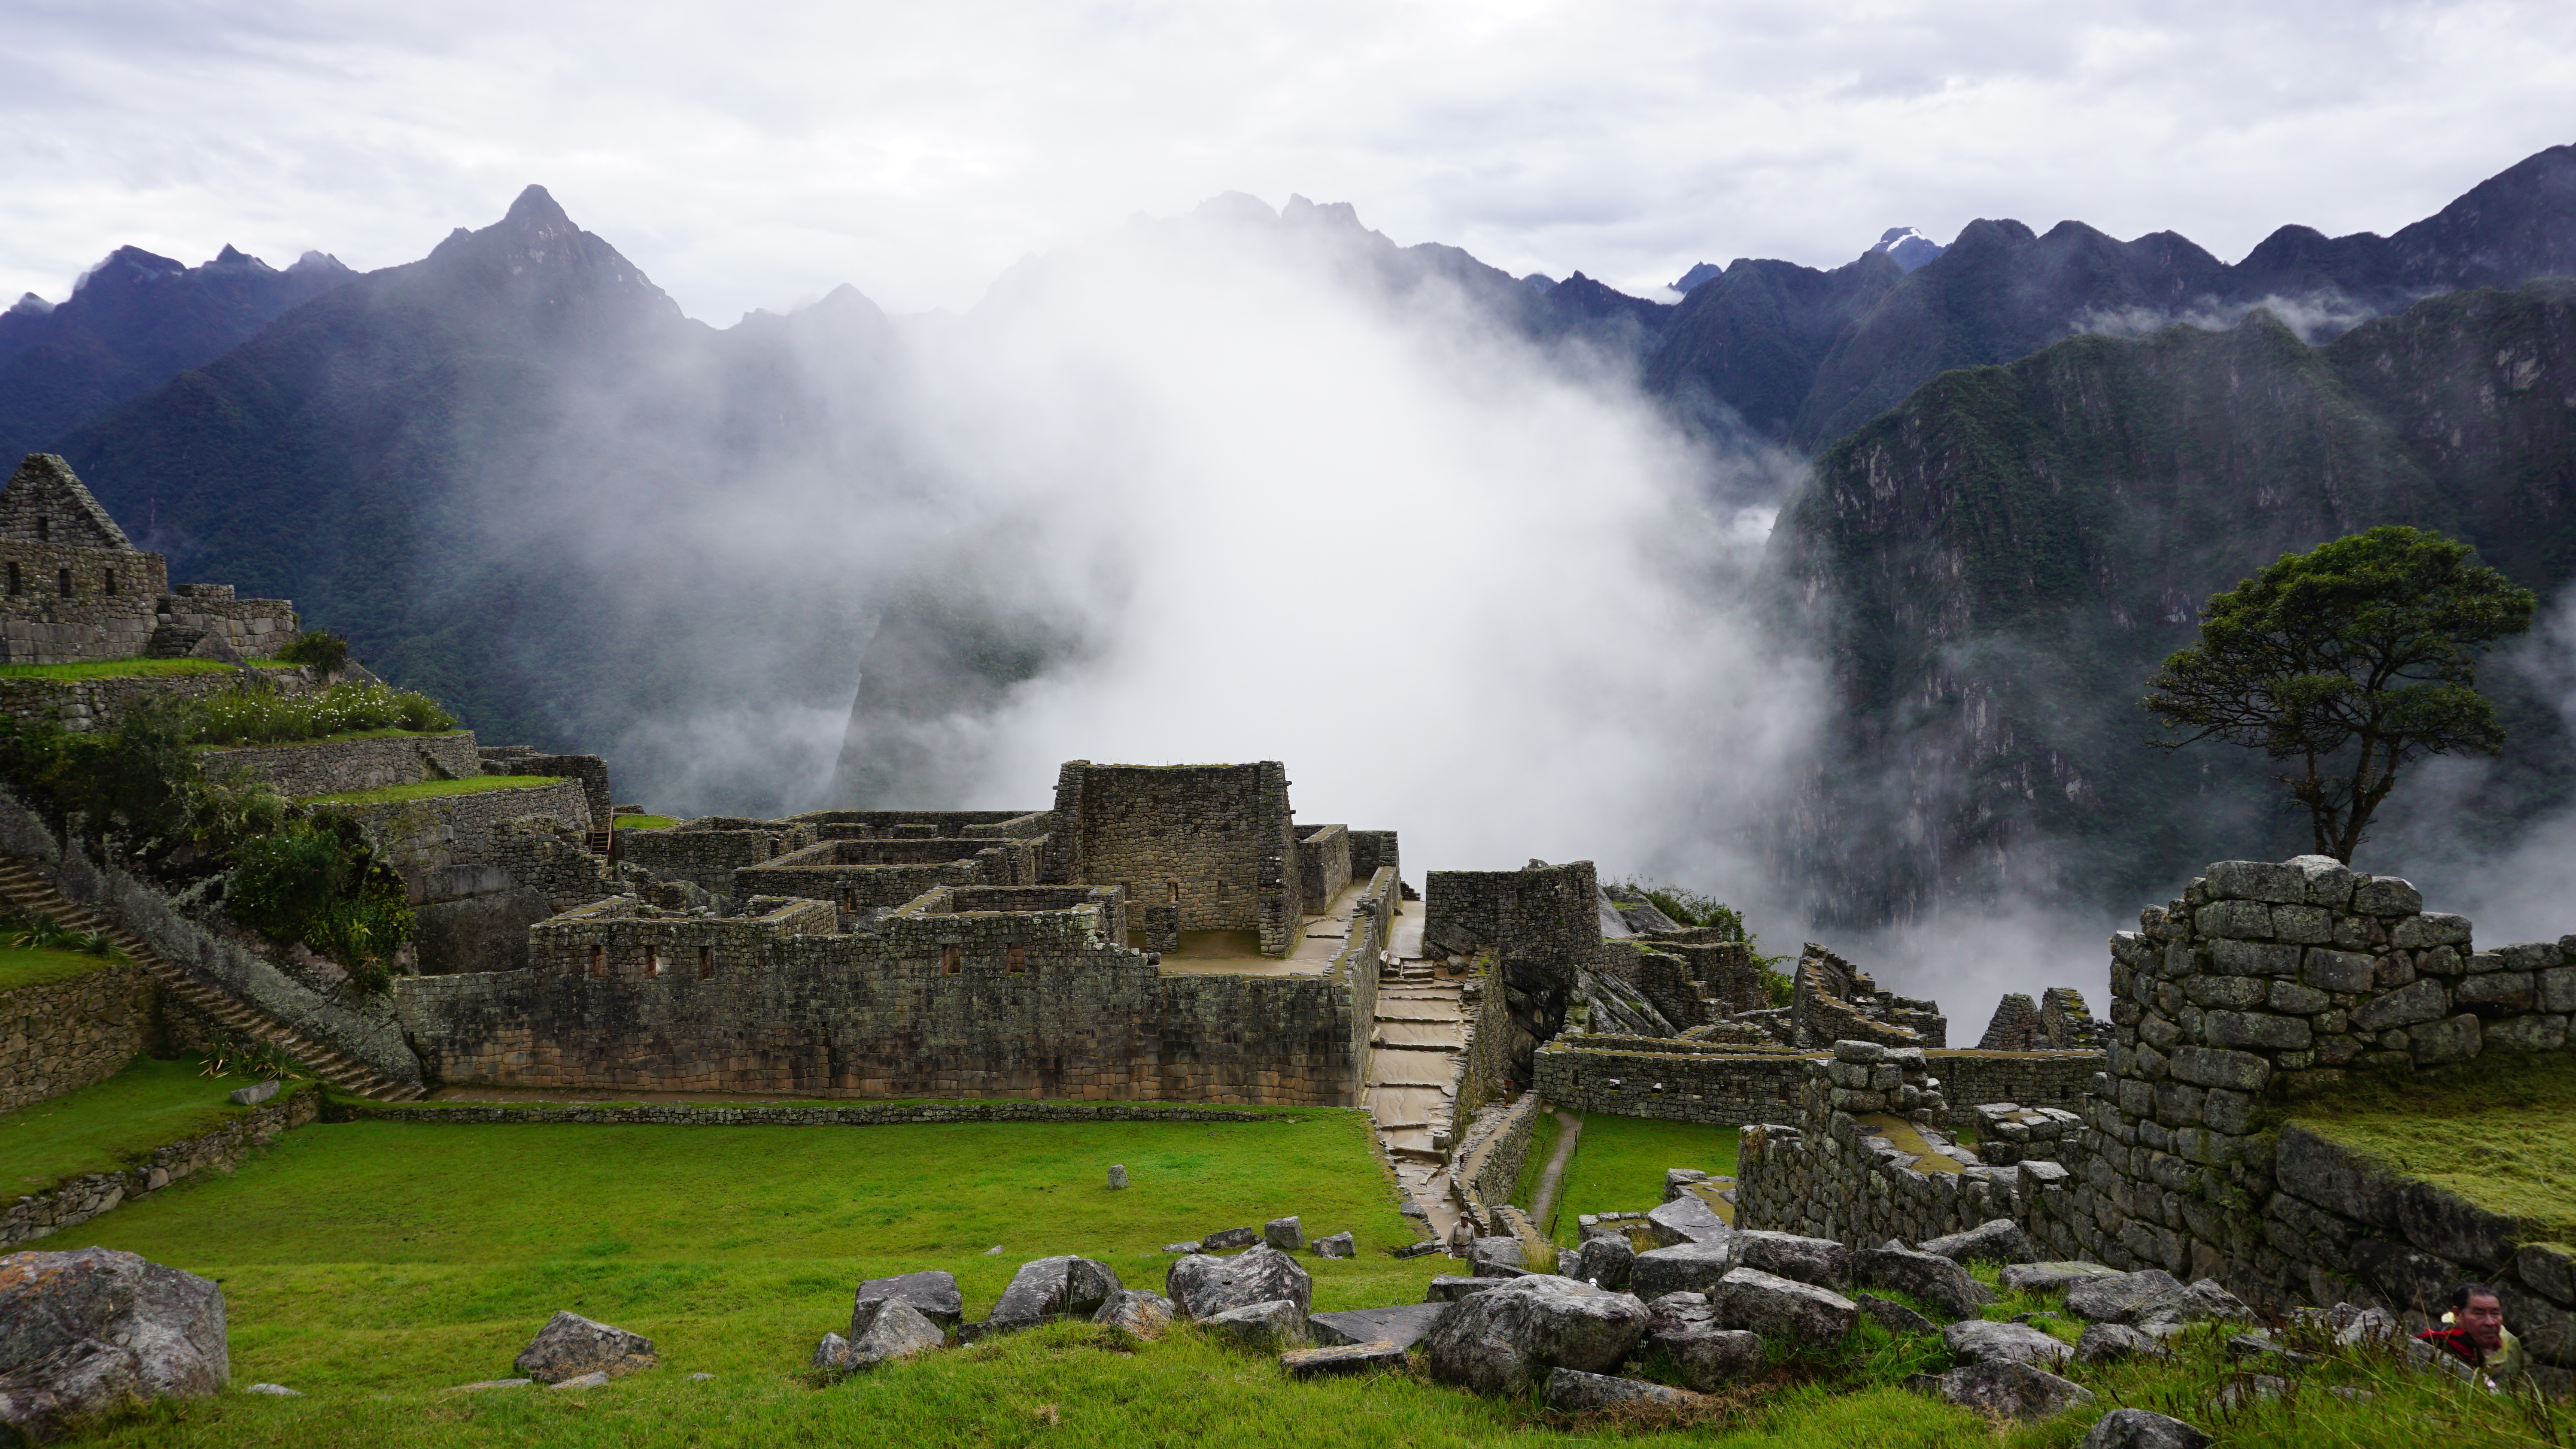 Machu Picchu Peru fog rising over the ruins